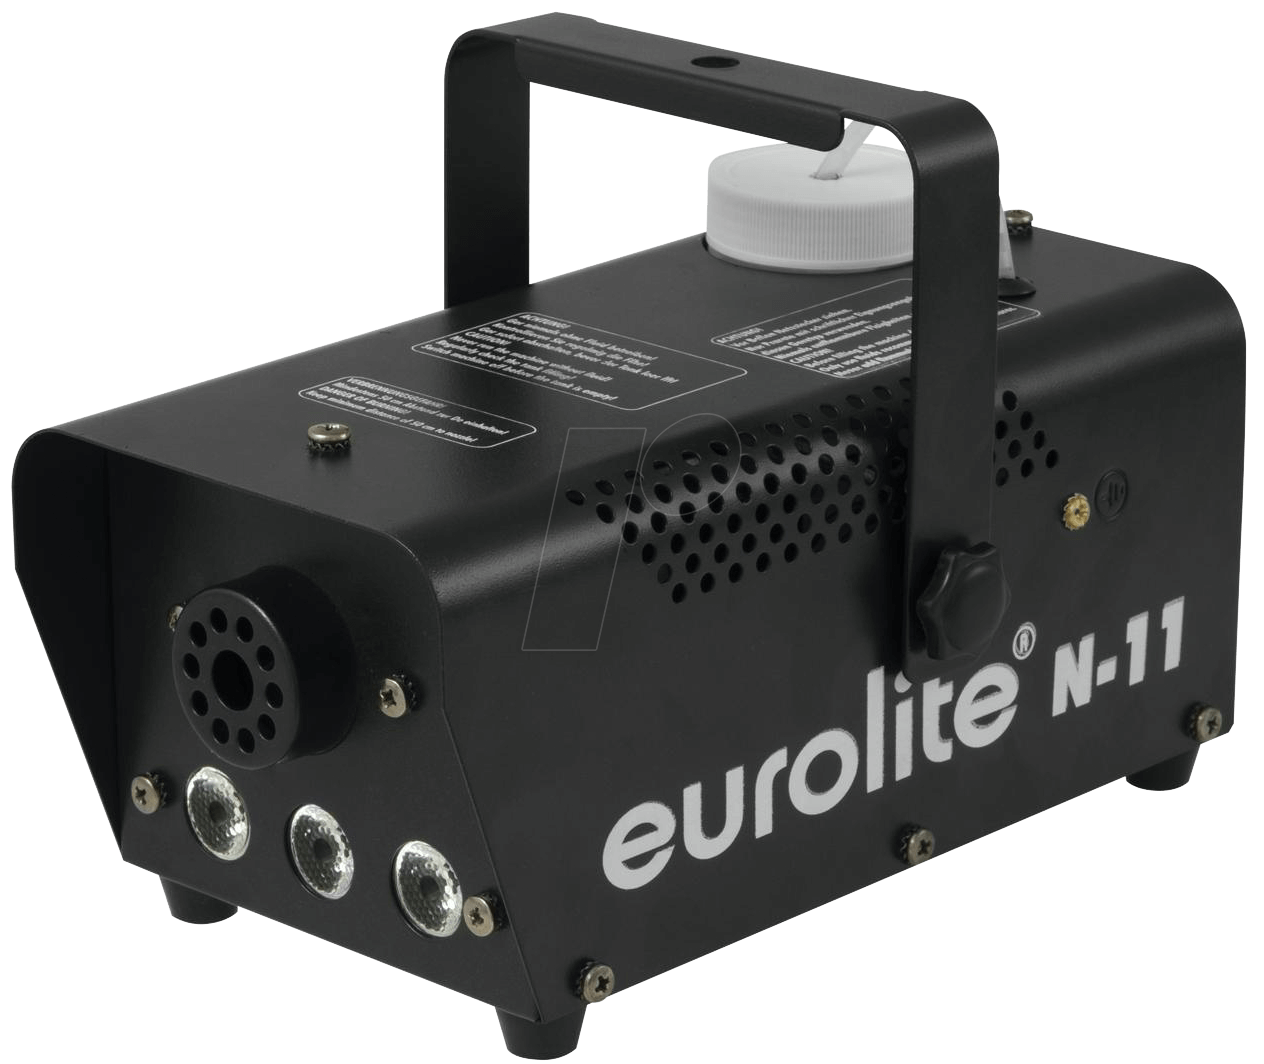 EUROLITE Nebelmaschine N-11 LED HYBRID BL mit Lichteffekt, inkl. Kabelfernbedienung, inkl. Befestigu